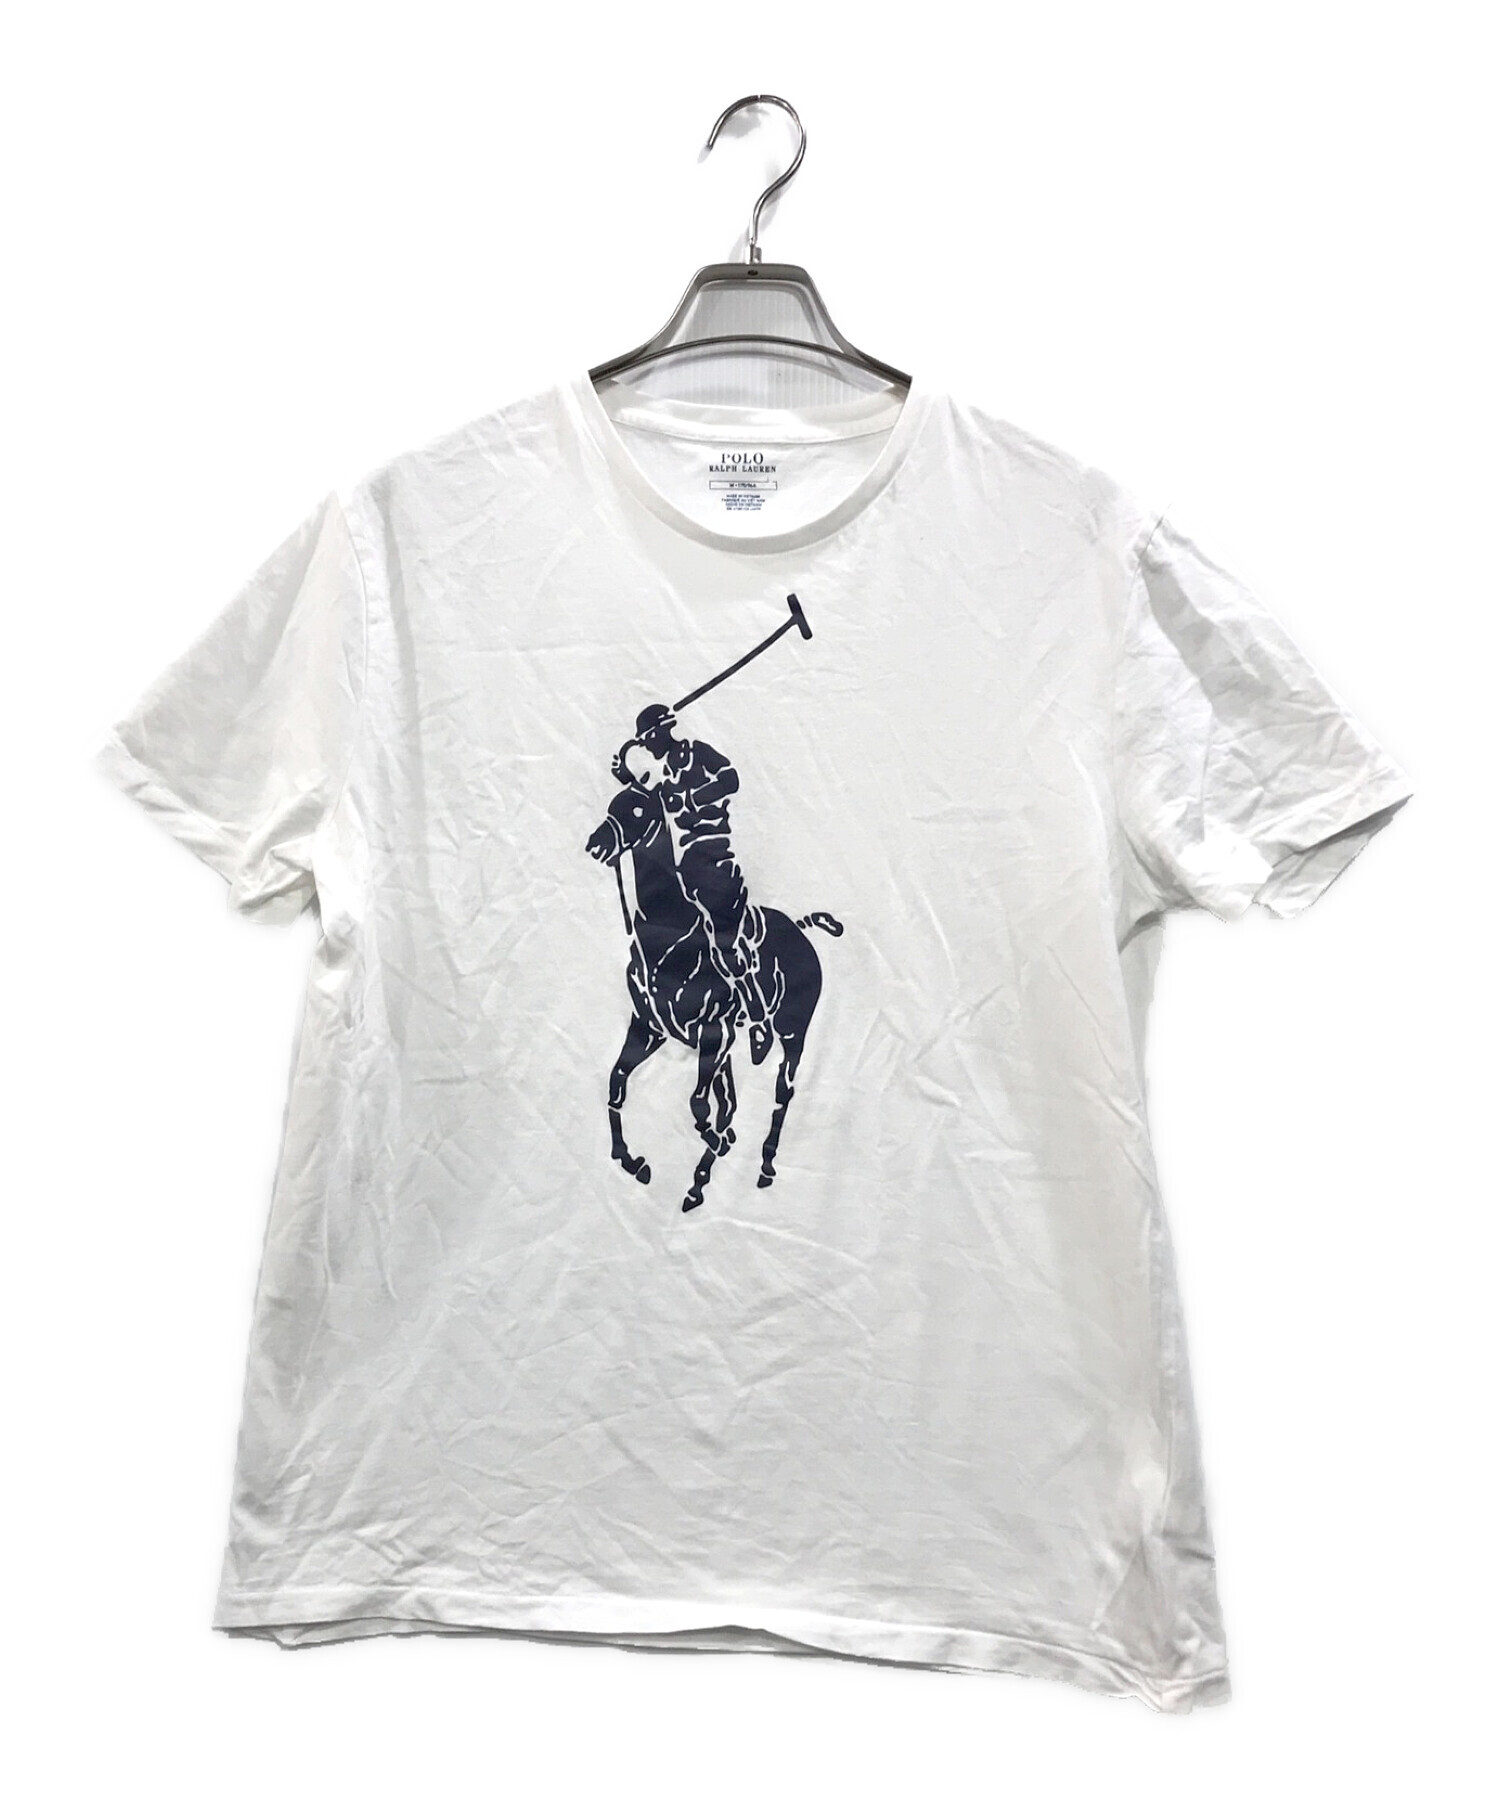 POLO RALPH LAUREN (ポロ・ラルフローレン) ポニープリントTシャツ ホワイト サイズ:M